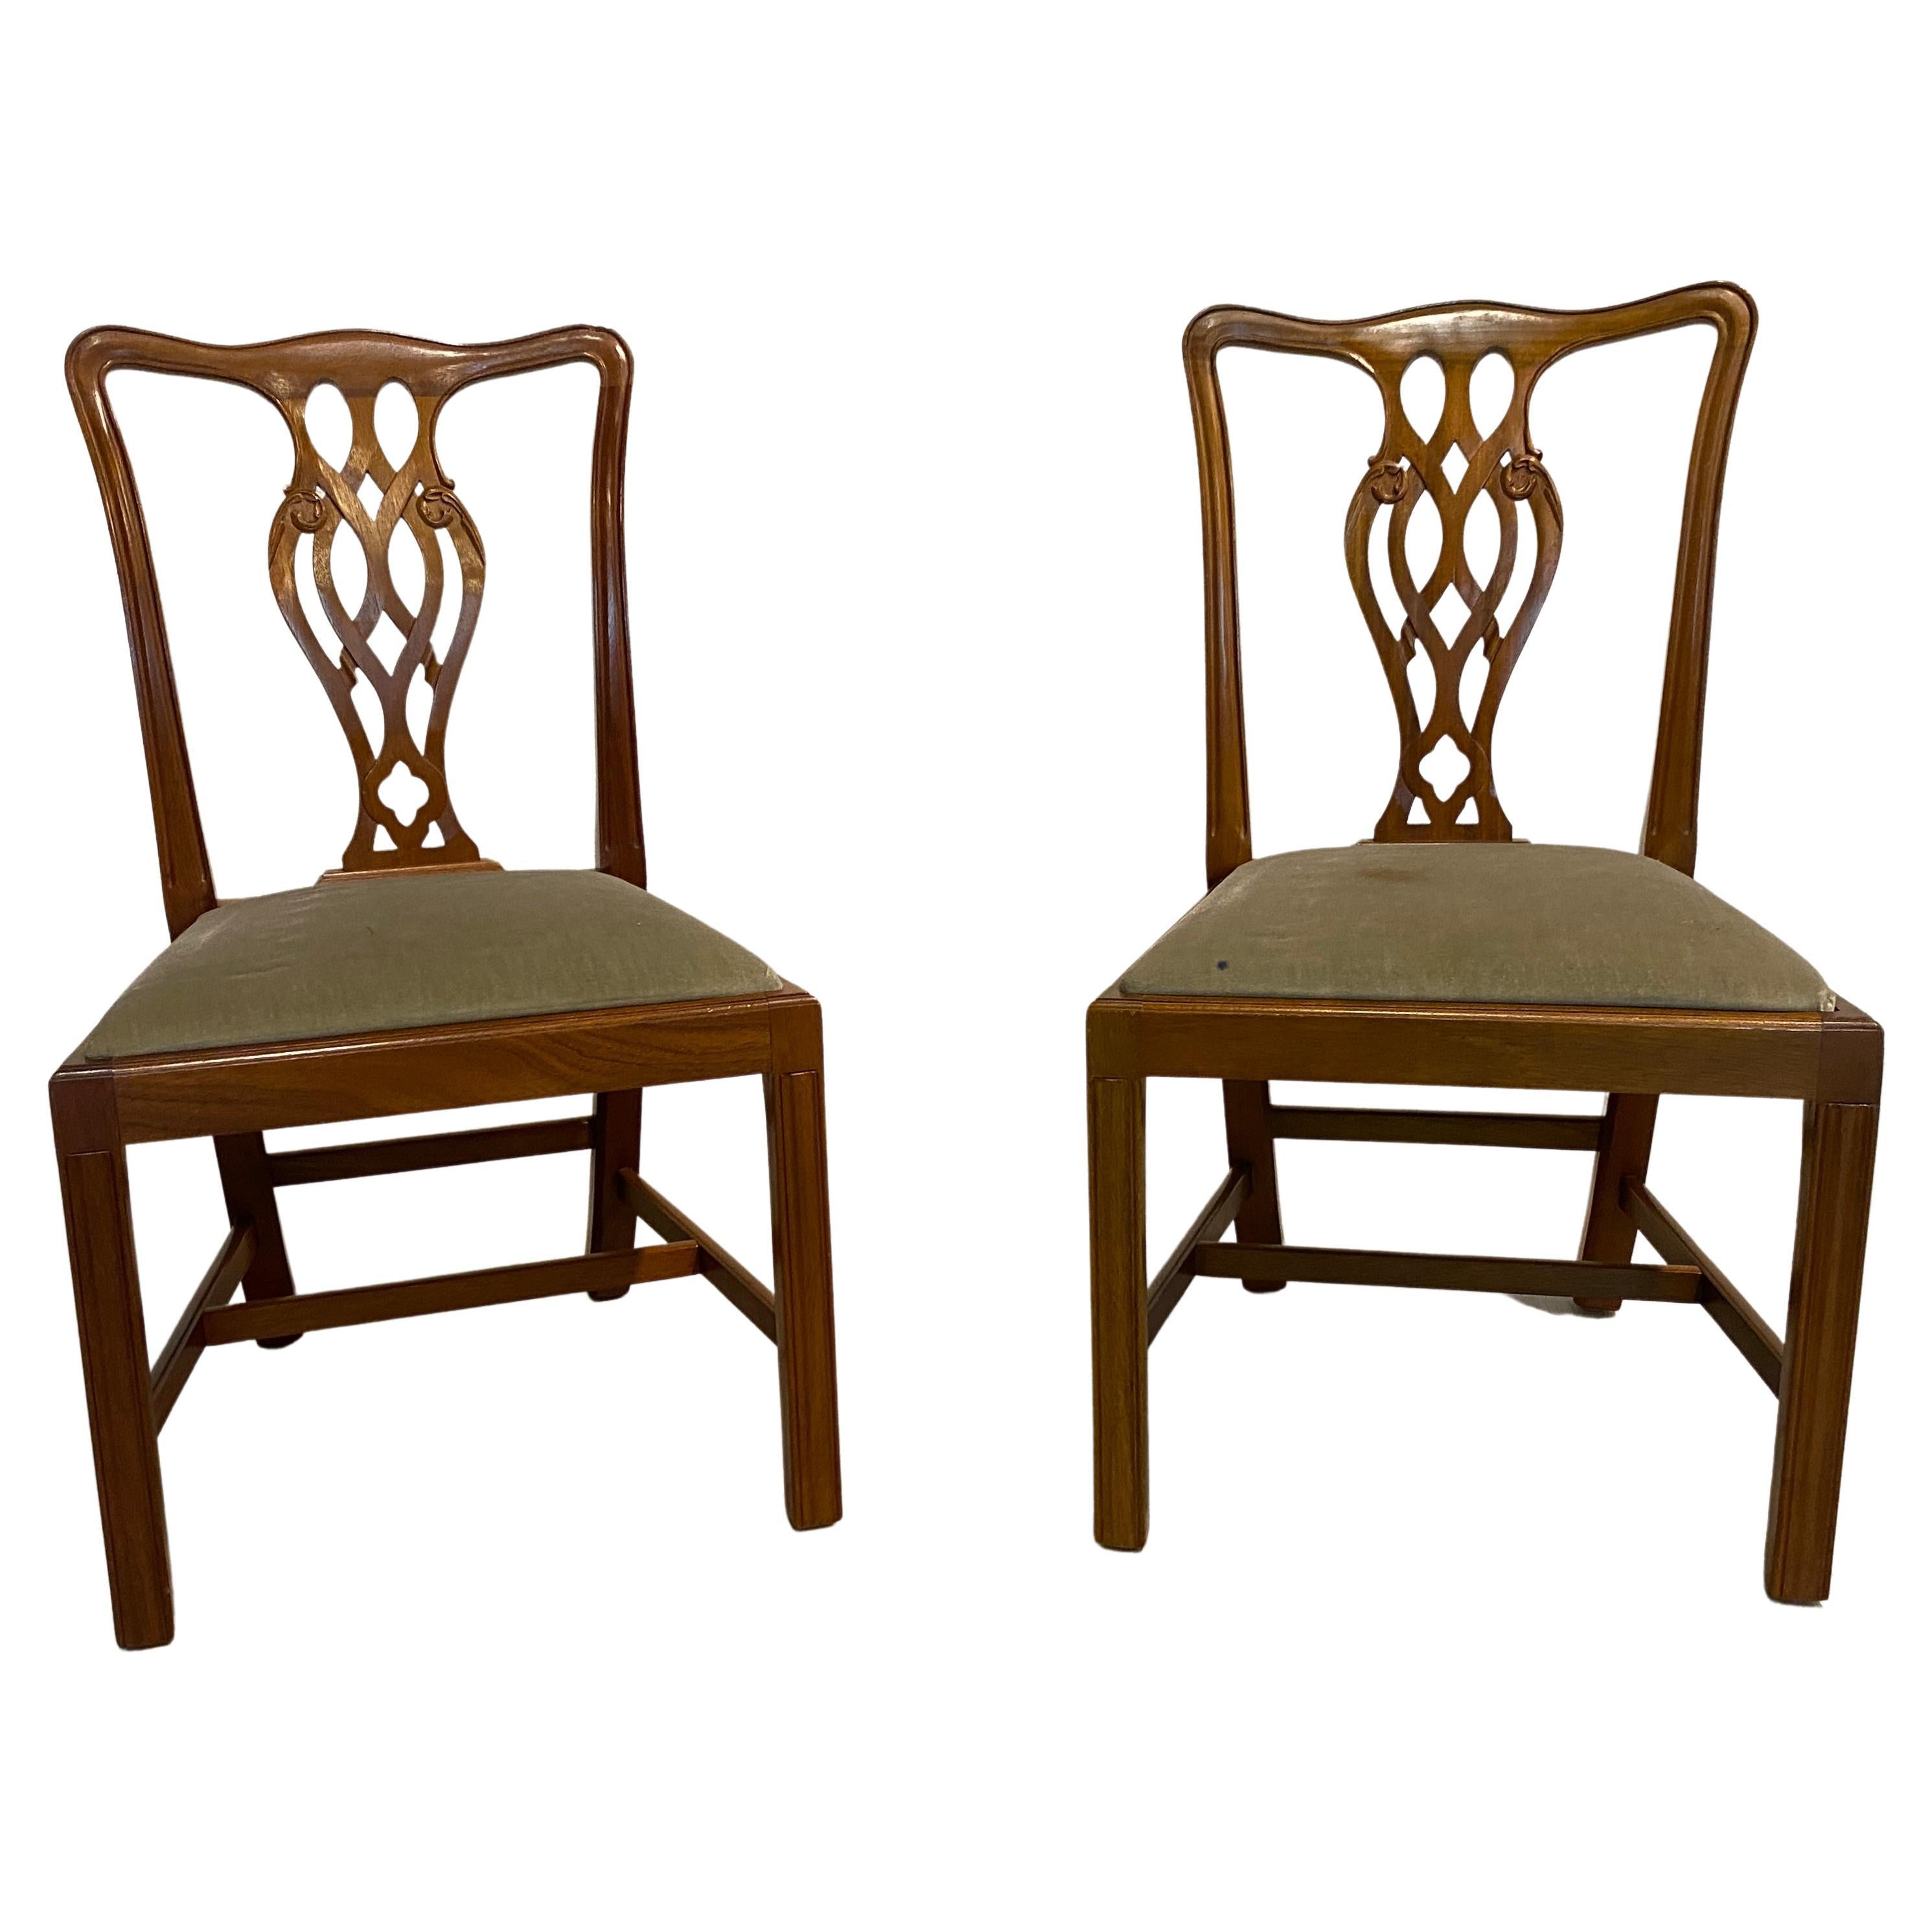 Esszimmerstühle, Mahagoni, georgianischer Stil, hergestellt in England, zwei Stühle ohne Armlehne